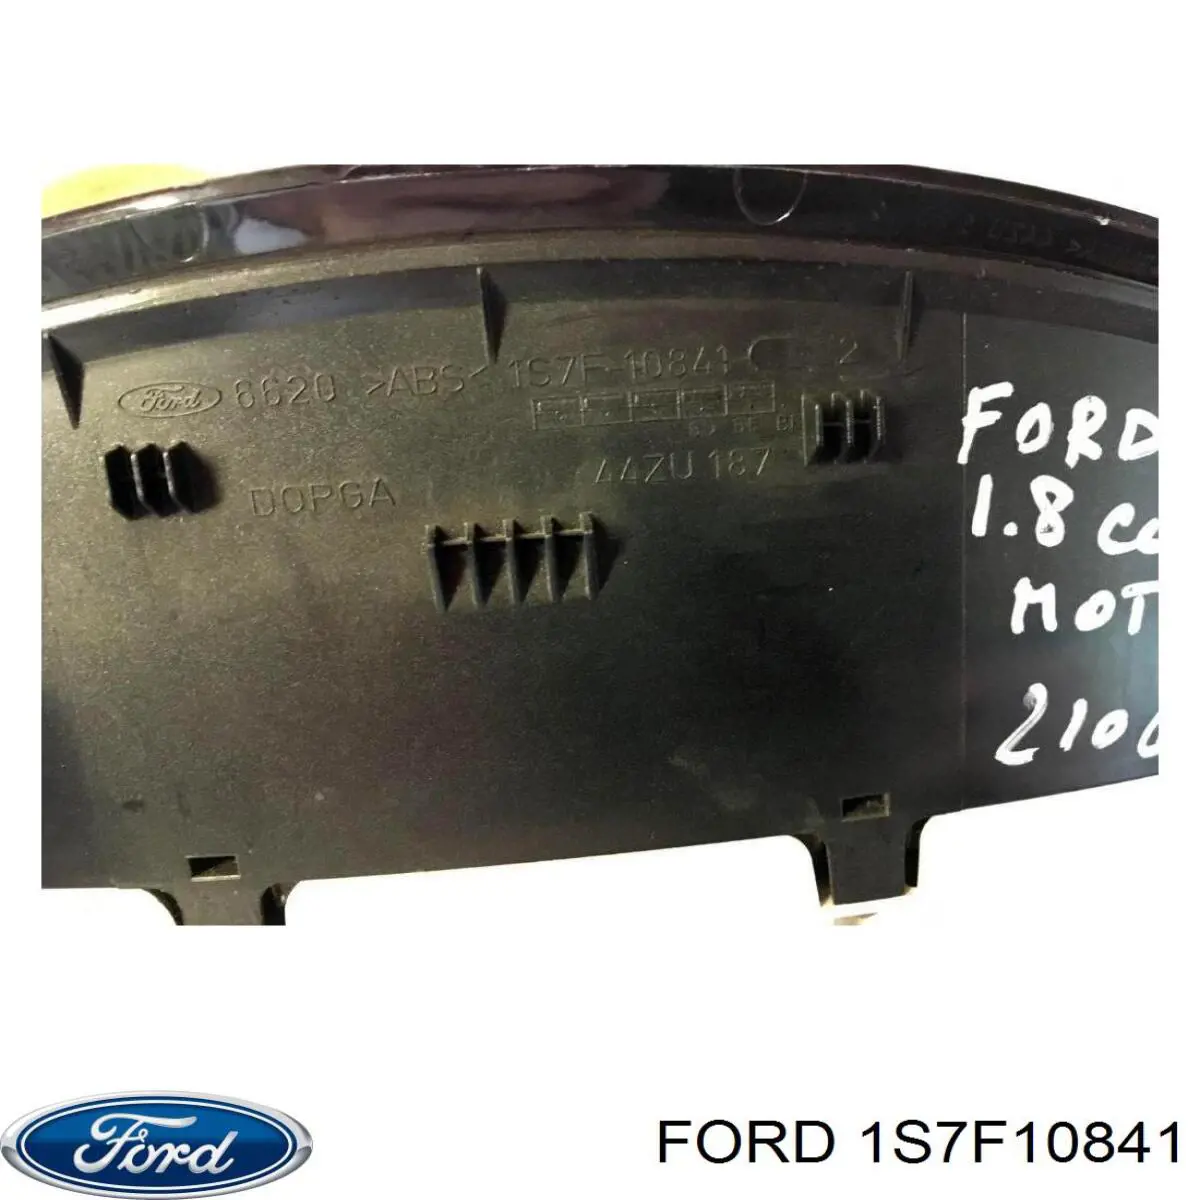 Приладова дошка-щиток приладів Ford Mondeo 3 (BWY) (Форд Мондео)